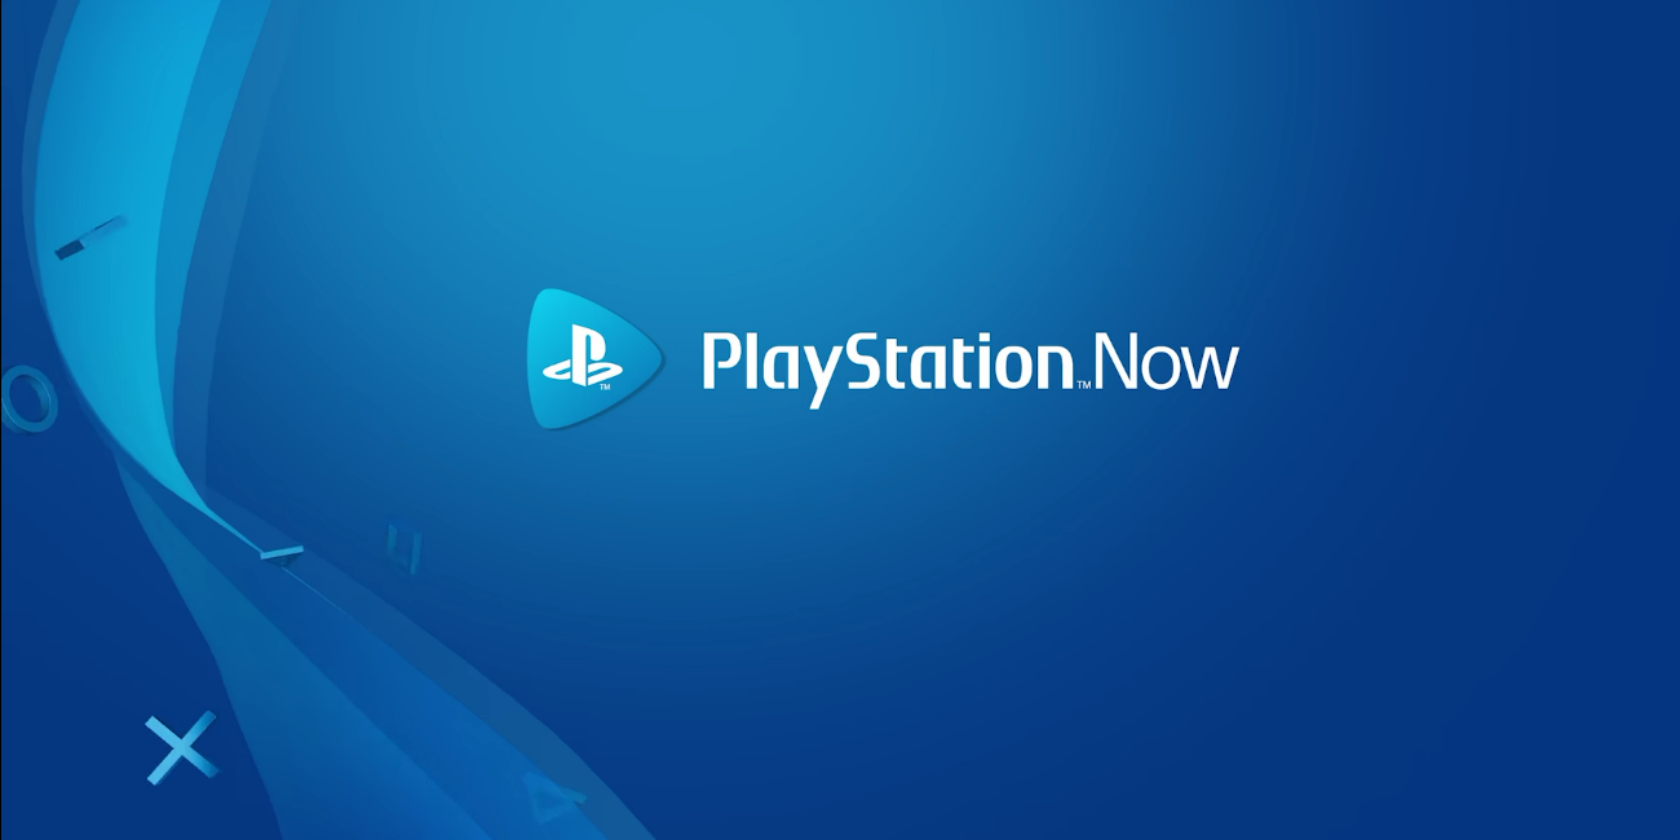 playstation now logo promo - Come accedere e utilizzare PSNow sul PC